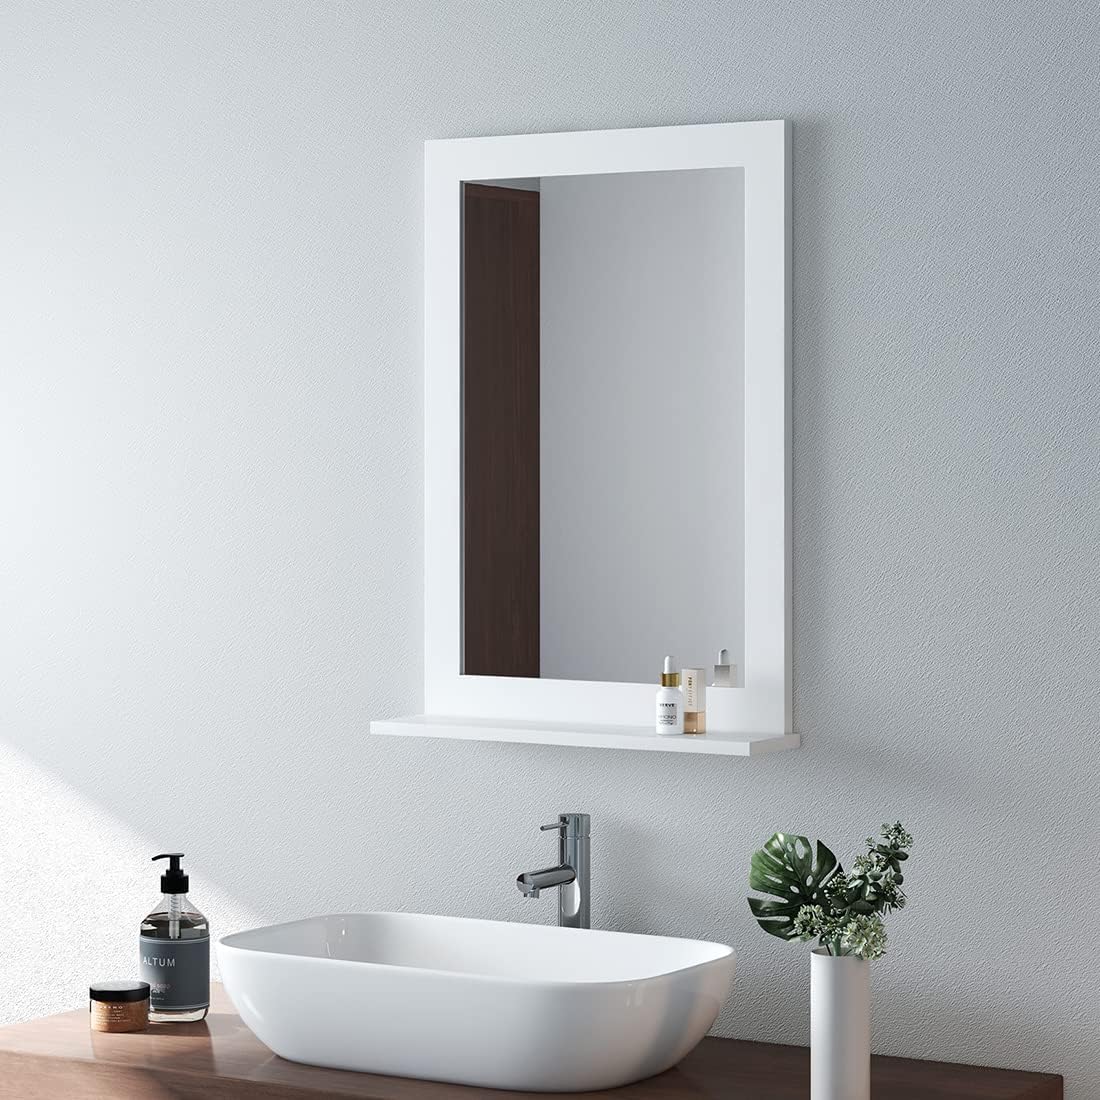 emke um02 bathroom mirror with shelf